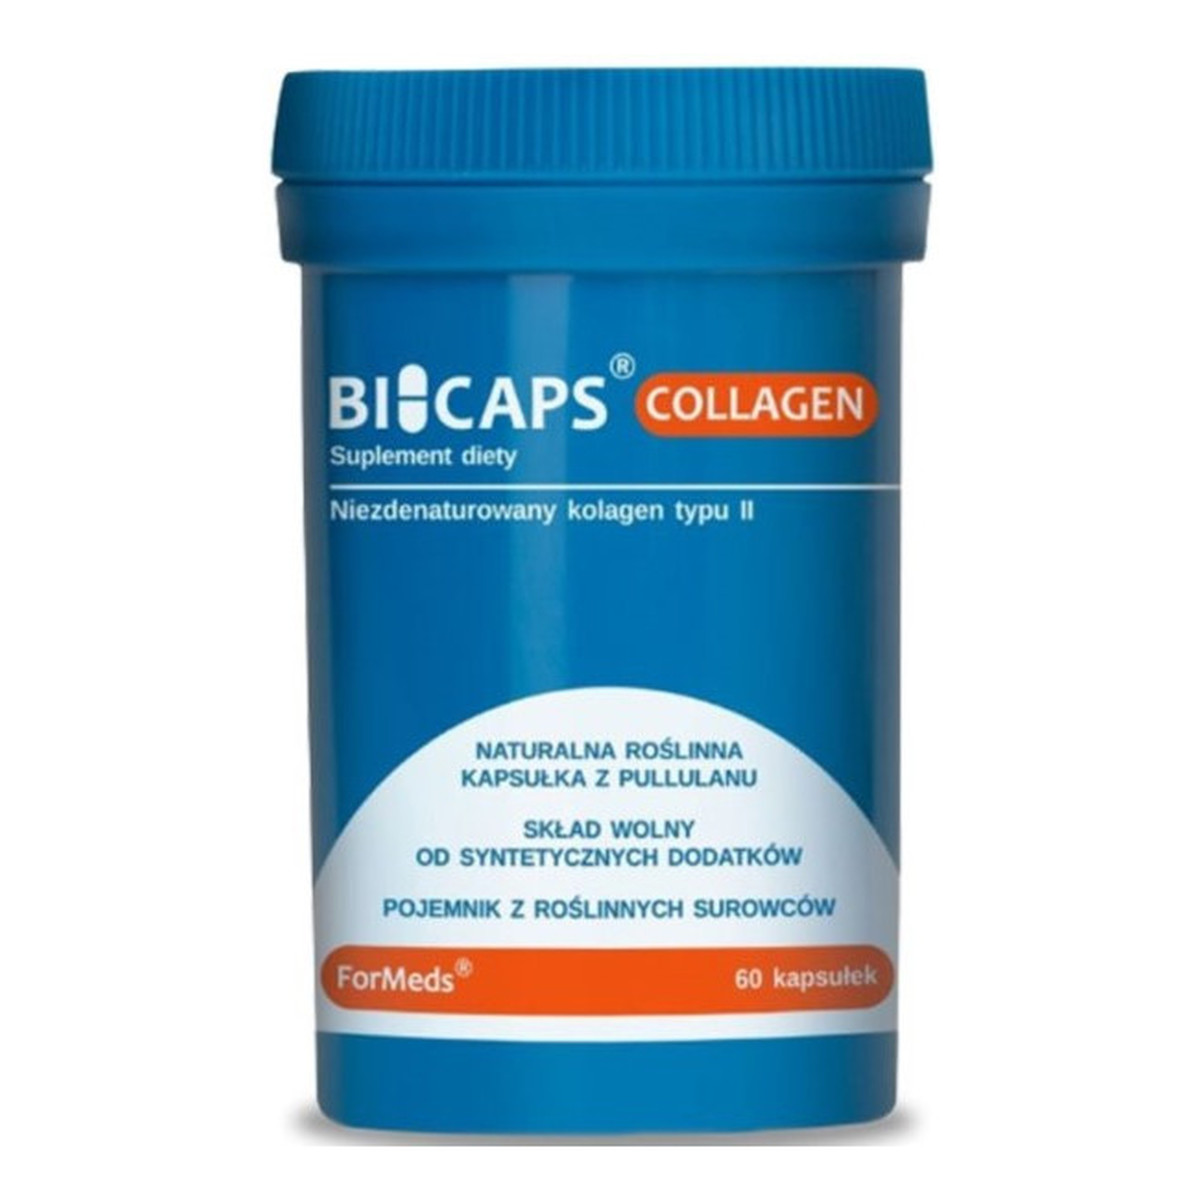 Formeds Bicaps Collagen suplement diety 60 kapsułek